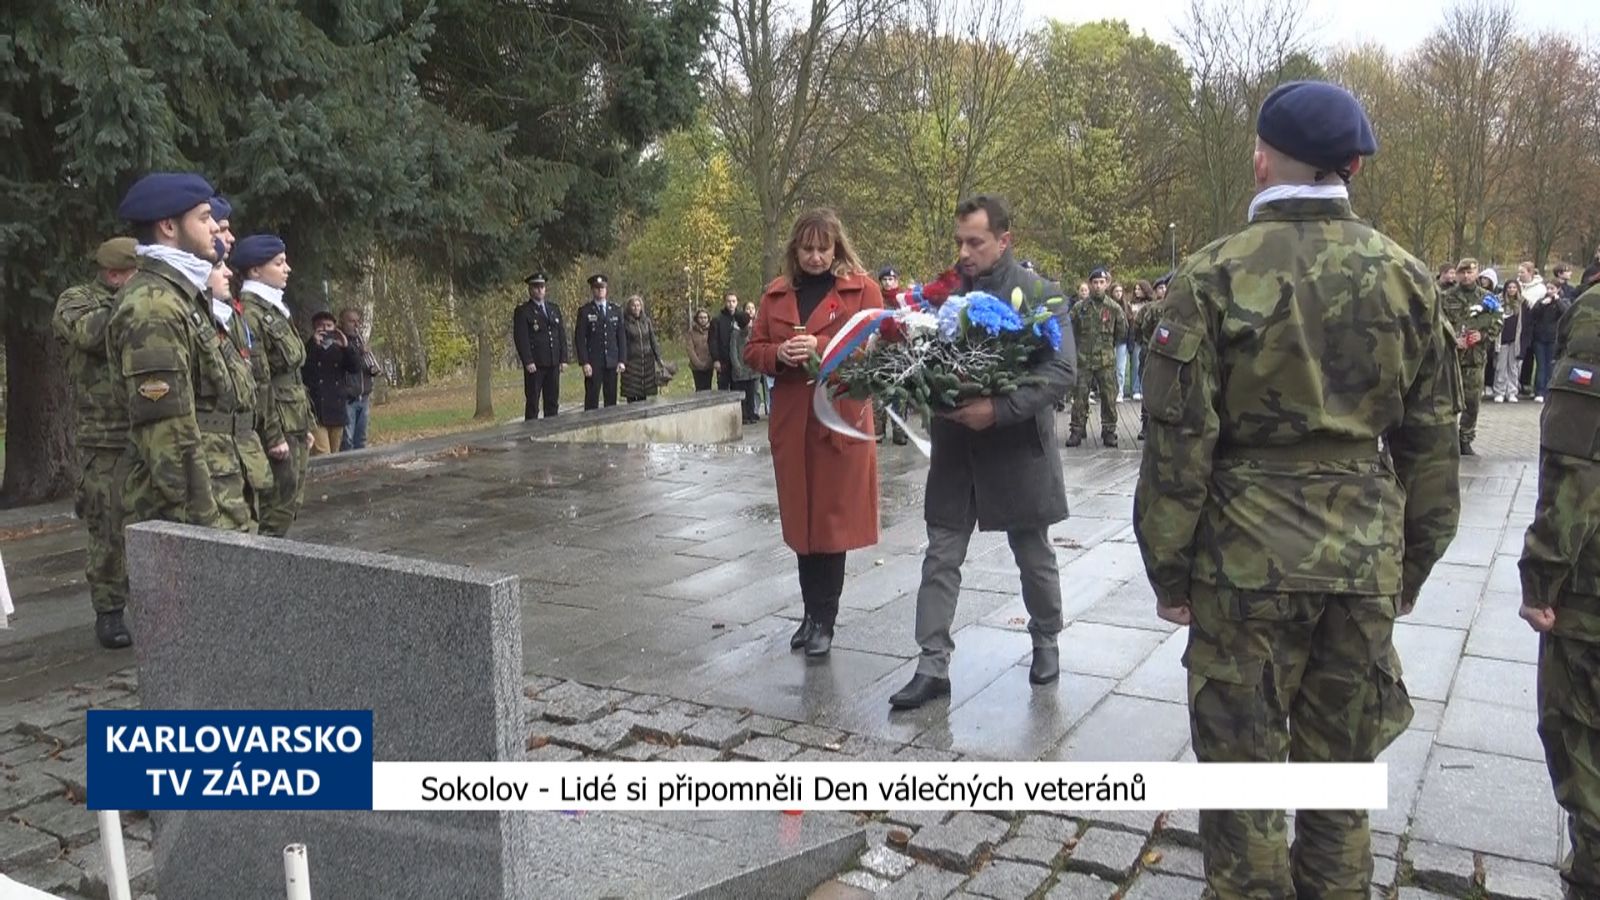 Sokolov: Lidé si připomněli Den válečných veteránů (TV Západ)